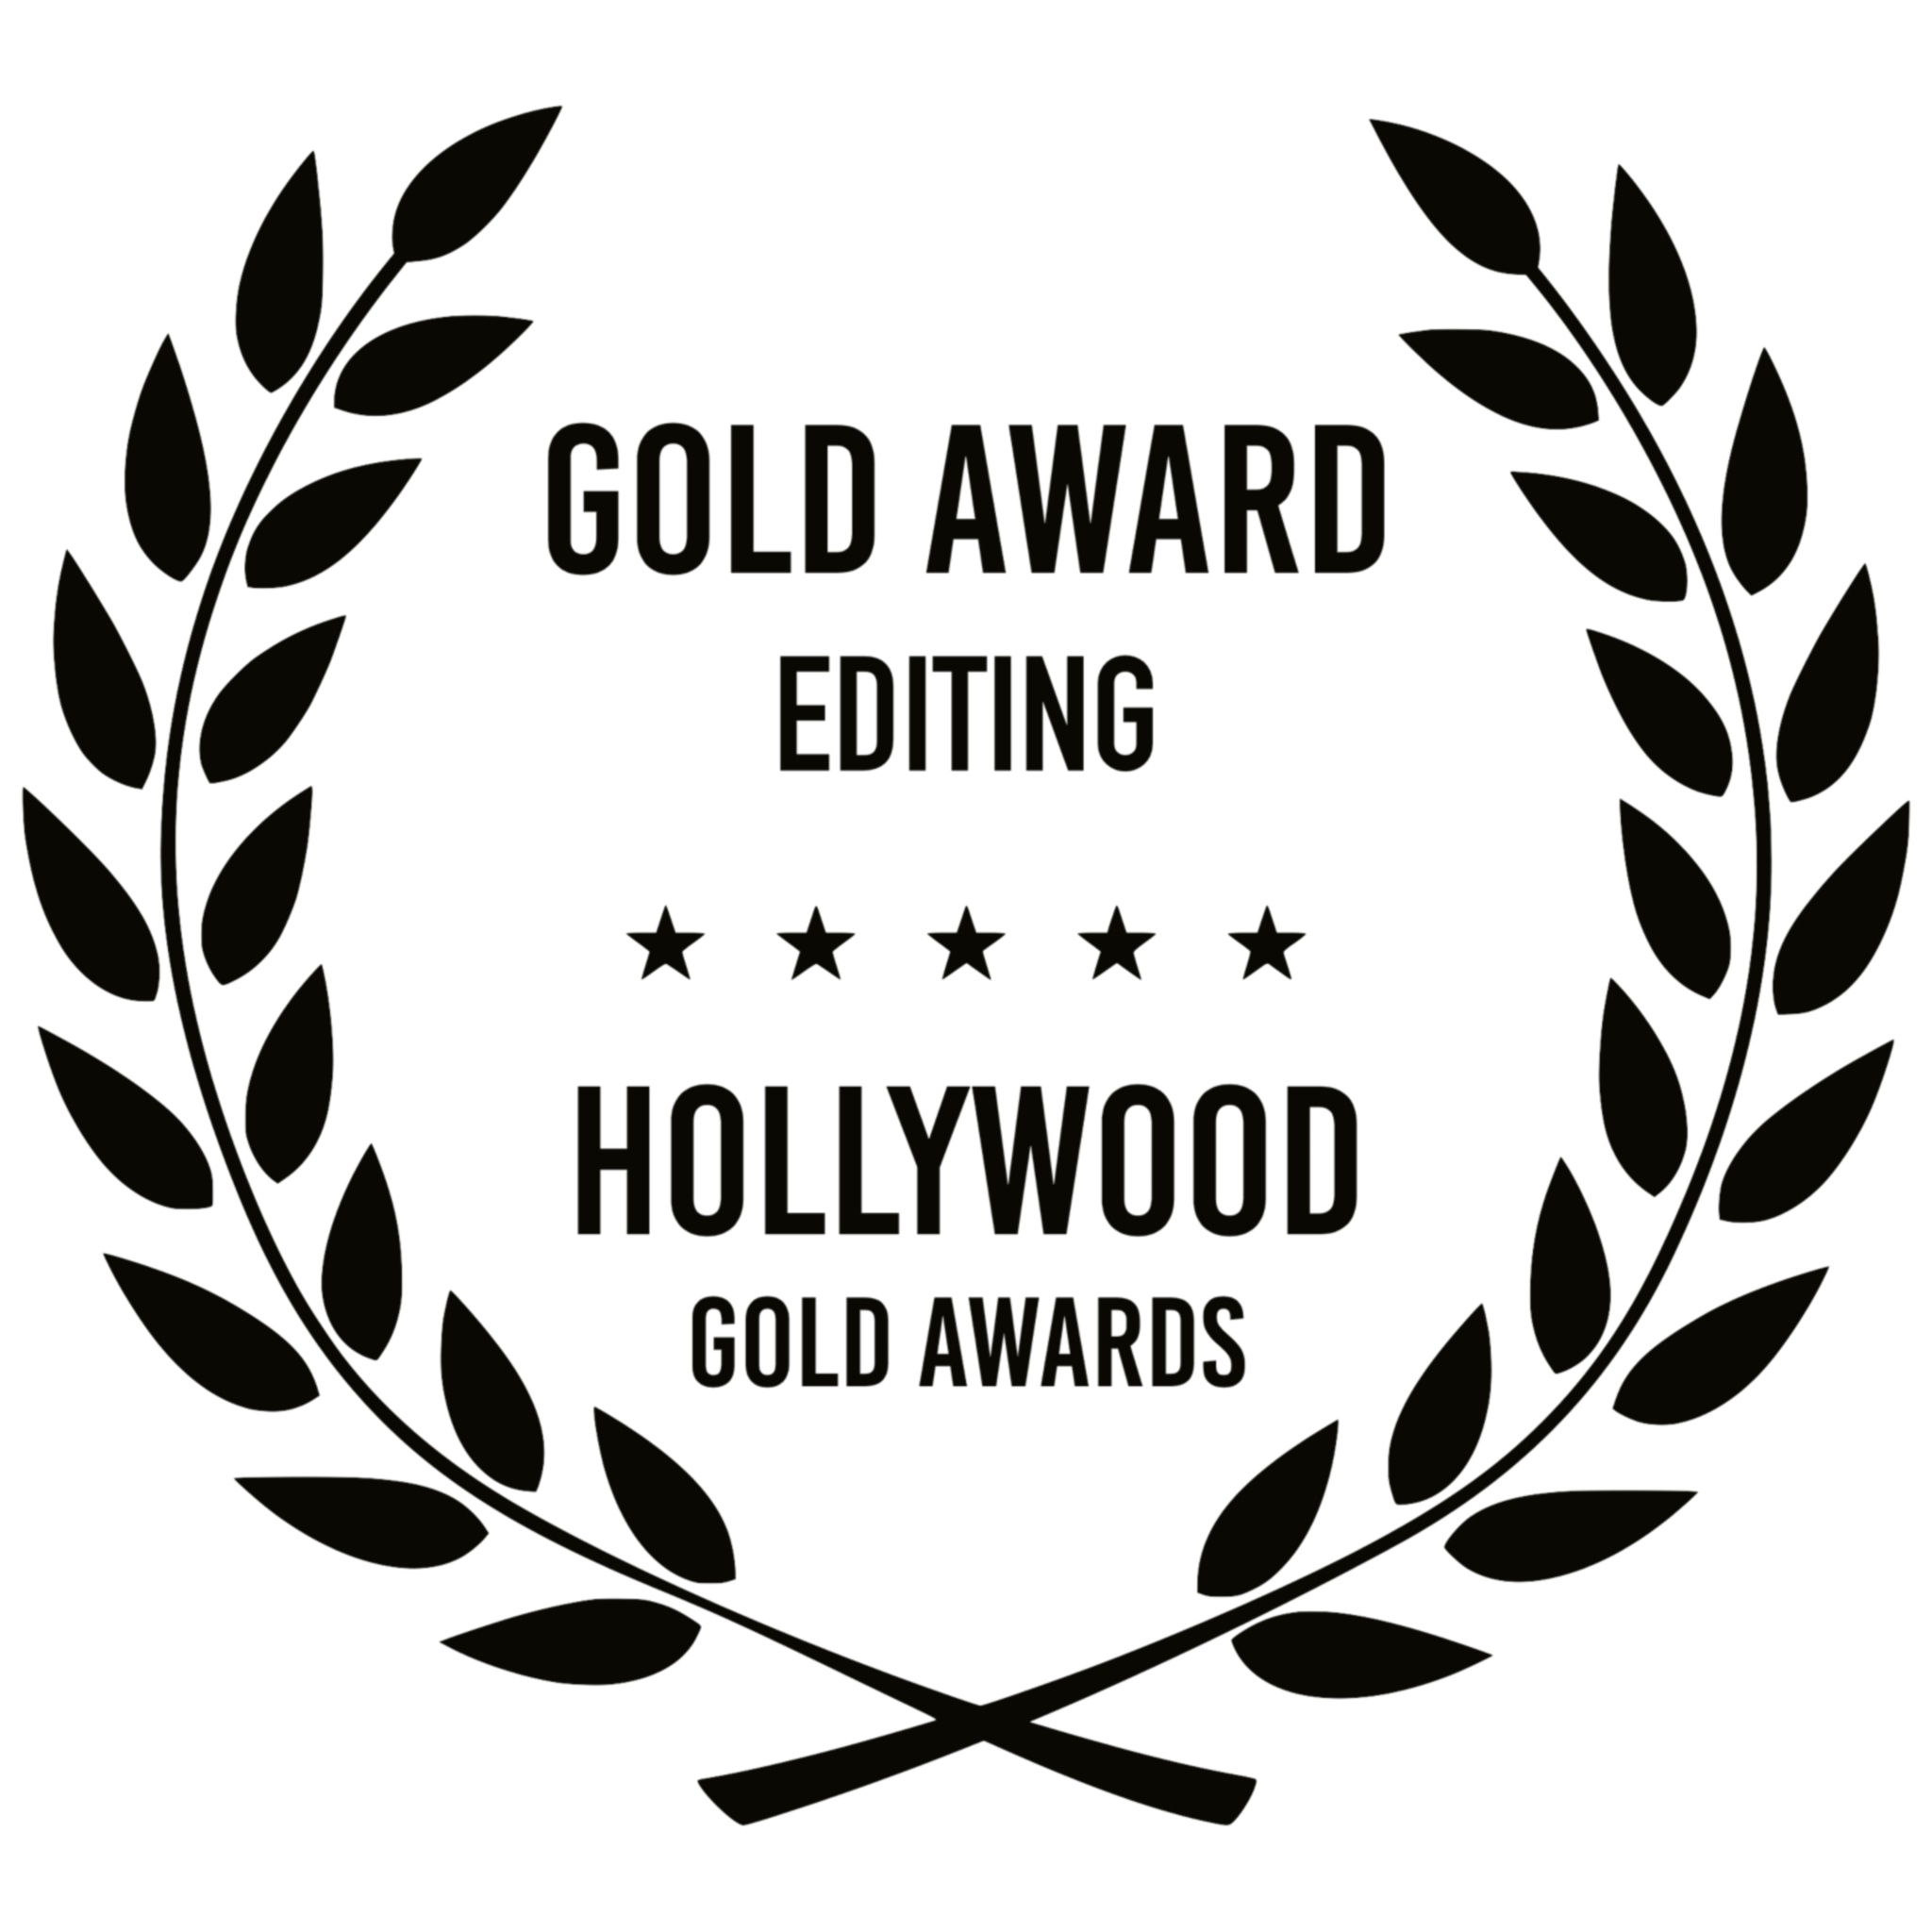 GOLD AWARD EDITING - HOLLYWOOD GOLD AWARDS